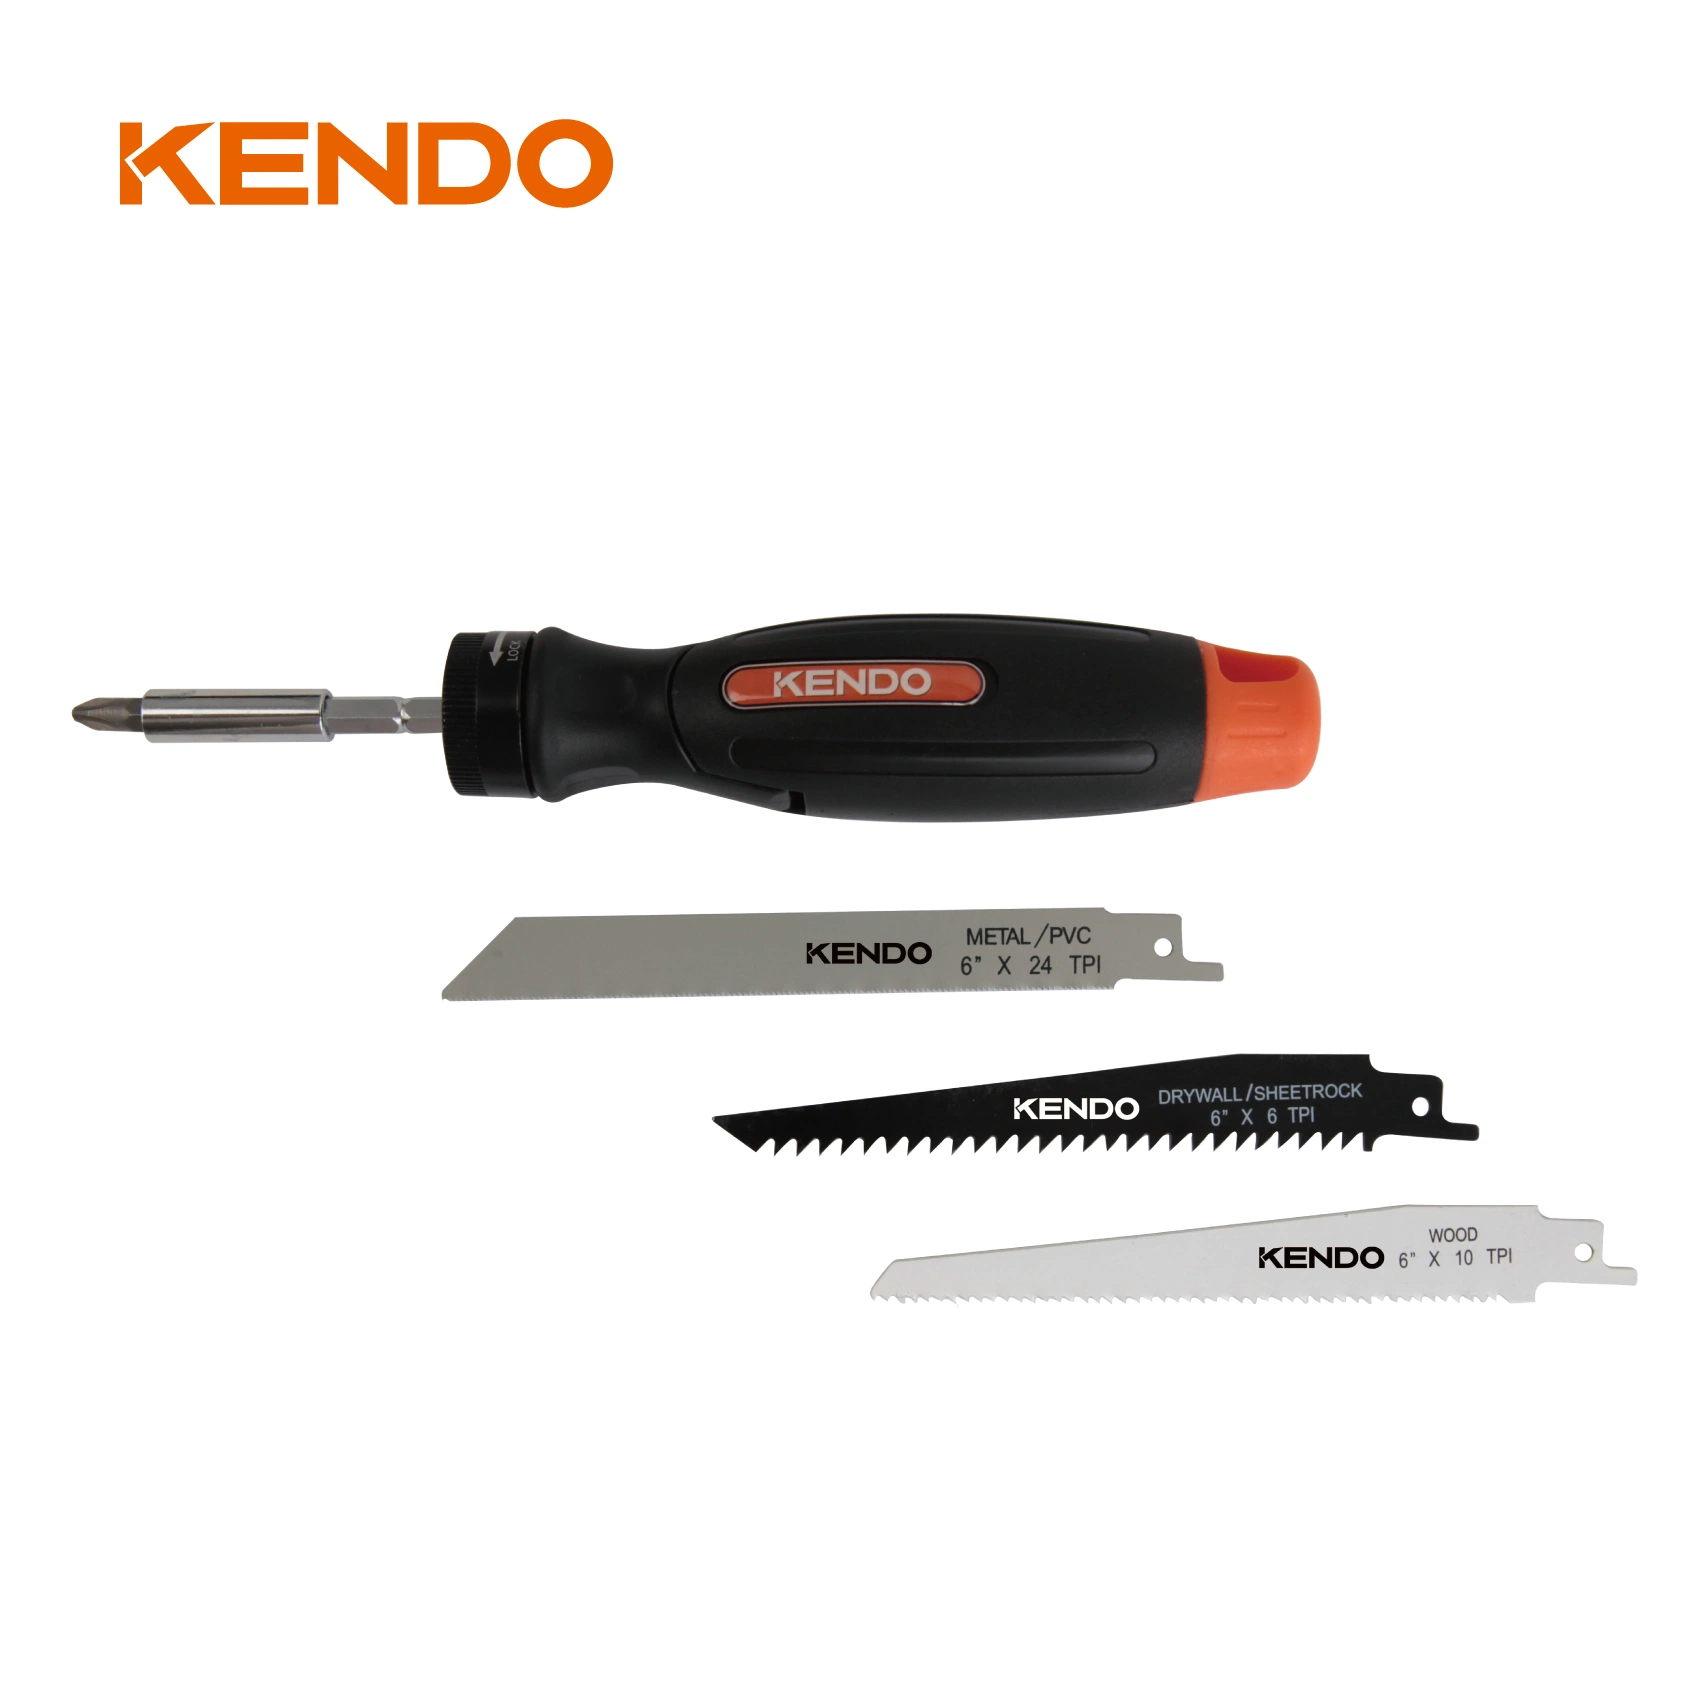 Conjunto de serra e broca kendo 14 em 1 com função combinada de Quatro ferramentas exclusivas